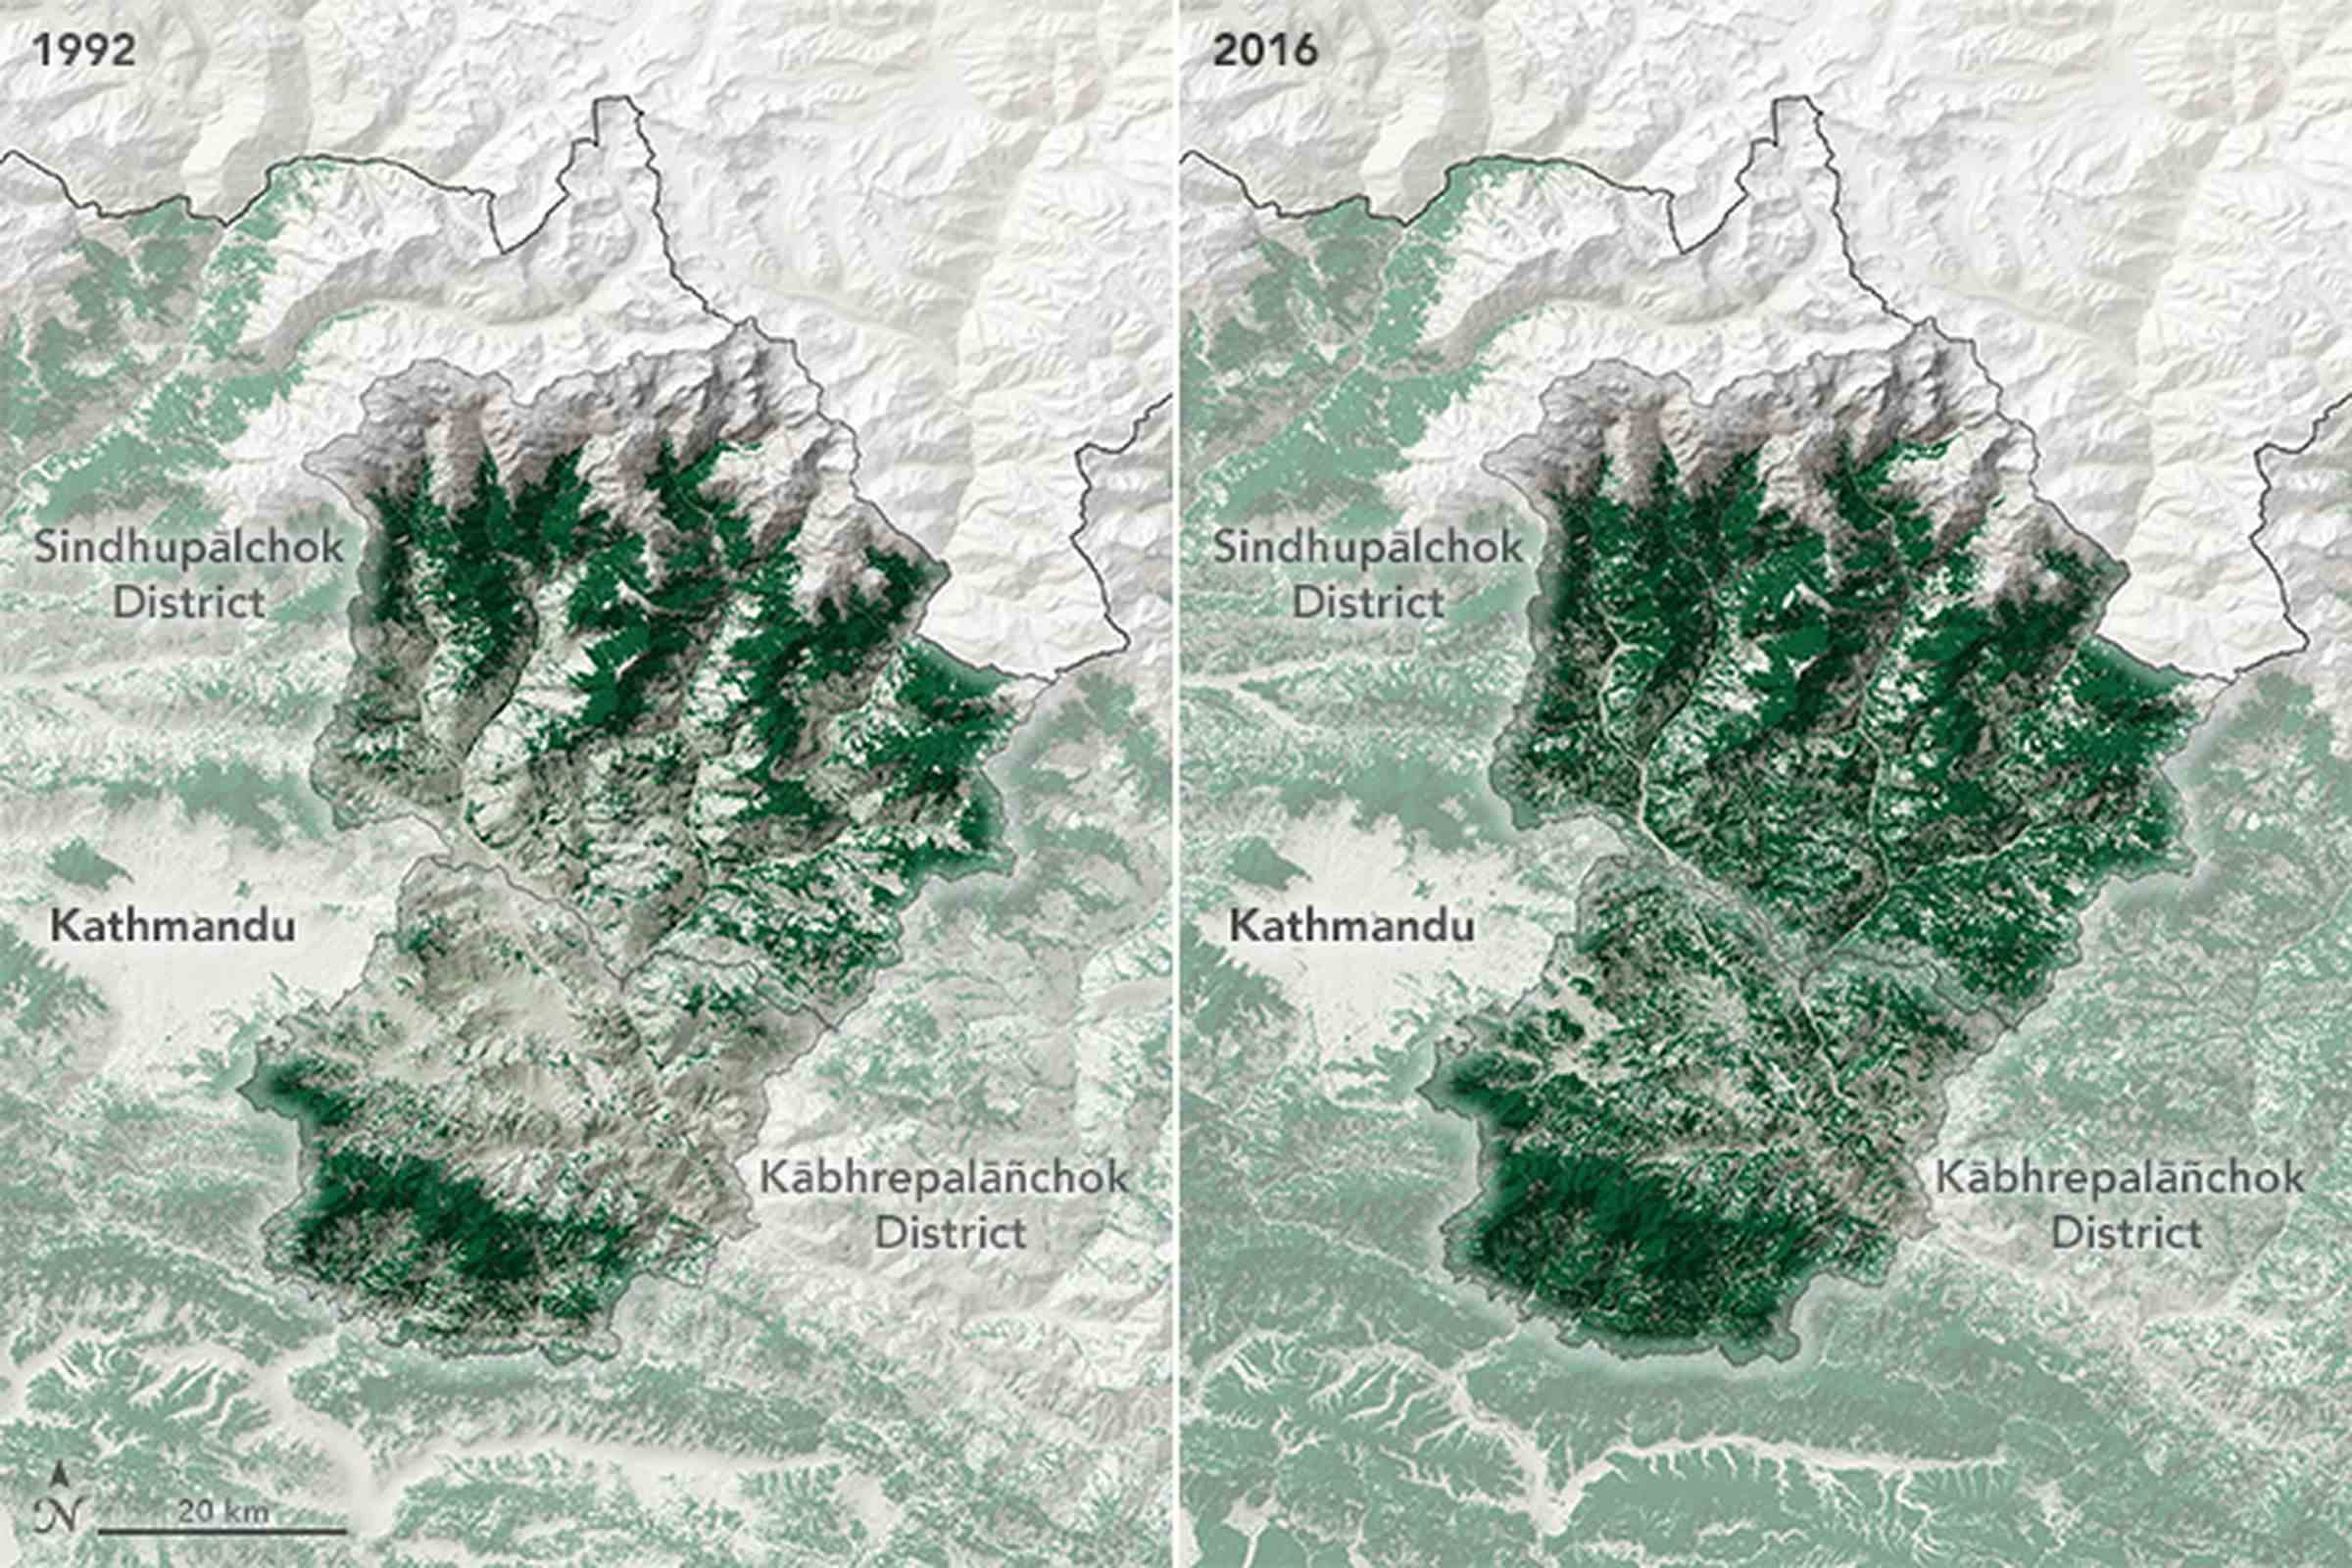 Soldaki bir harita, 1992'de azalan orman örtüsünü gösteren yeşil benekli bir bölgeyi gösteriyor. Sağdaki harita, 2016'da orman örtüsünün arttığını gösteren çok daha koyu yeşille boyanmış alanı gösteriyor.